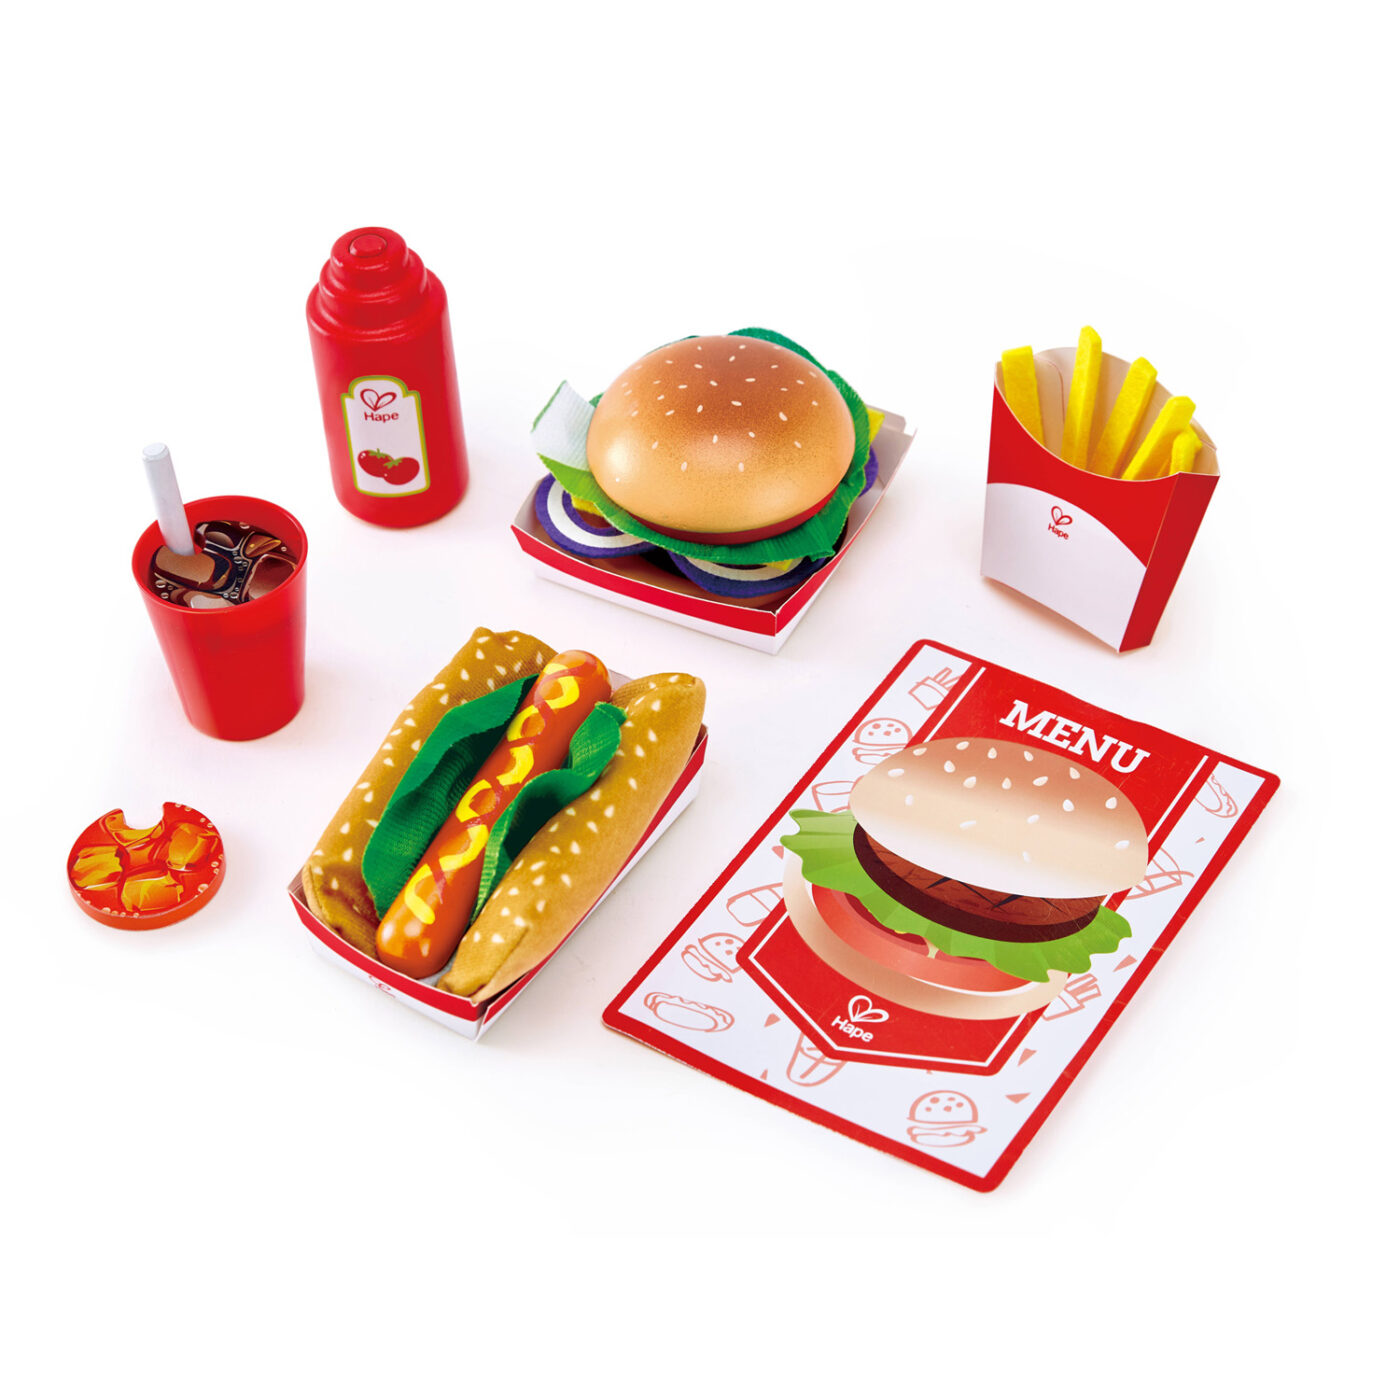 ハンバーガー&ホットドックセットの商品画像1